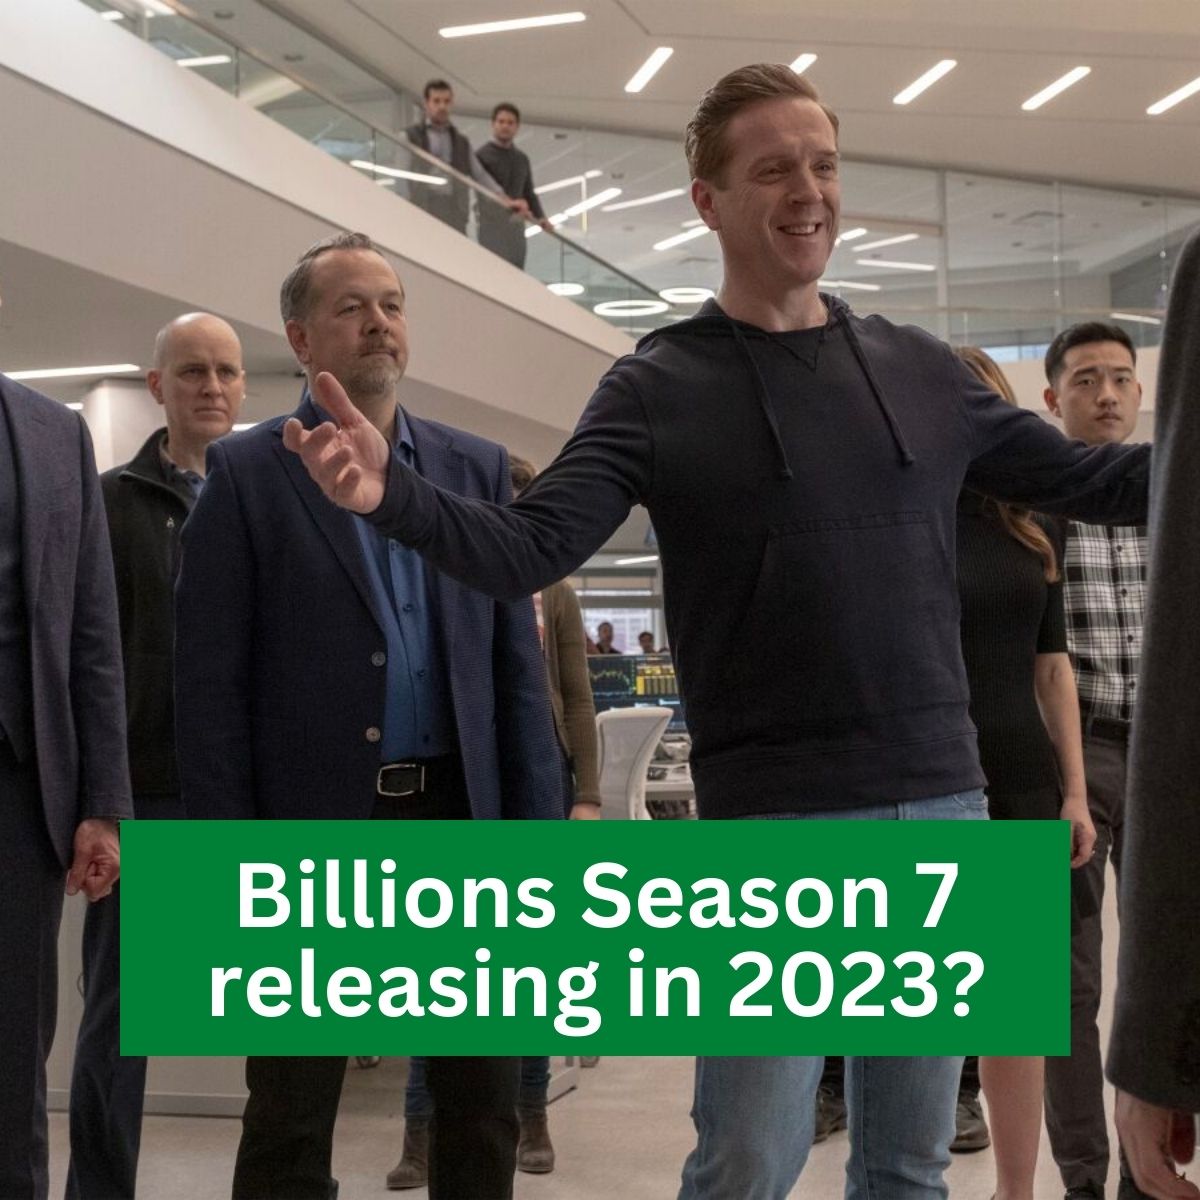 Billions Season 7 releasing in 2023?